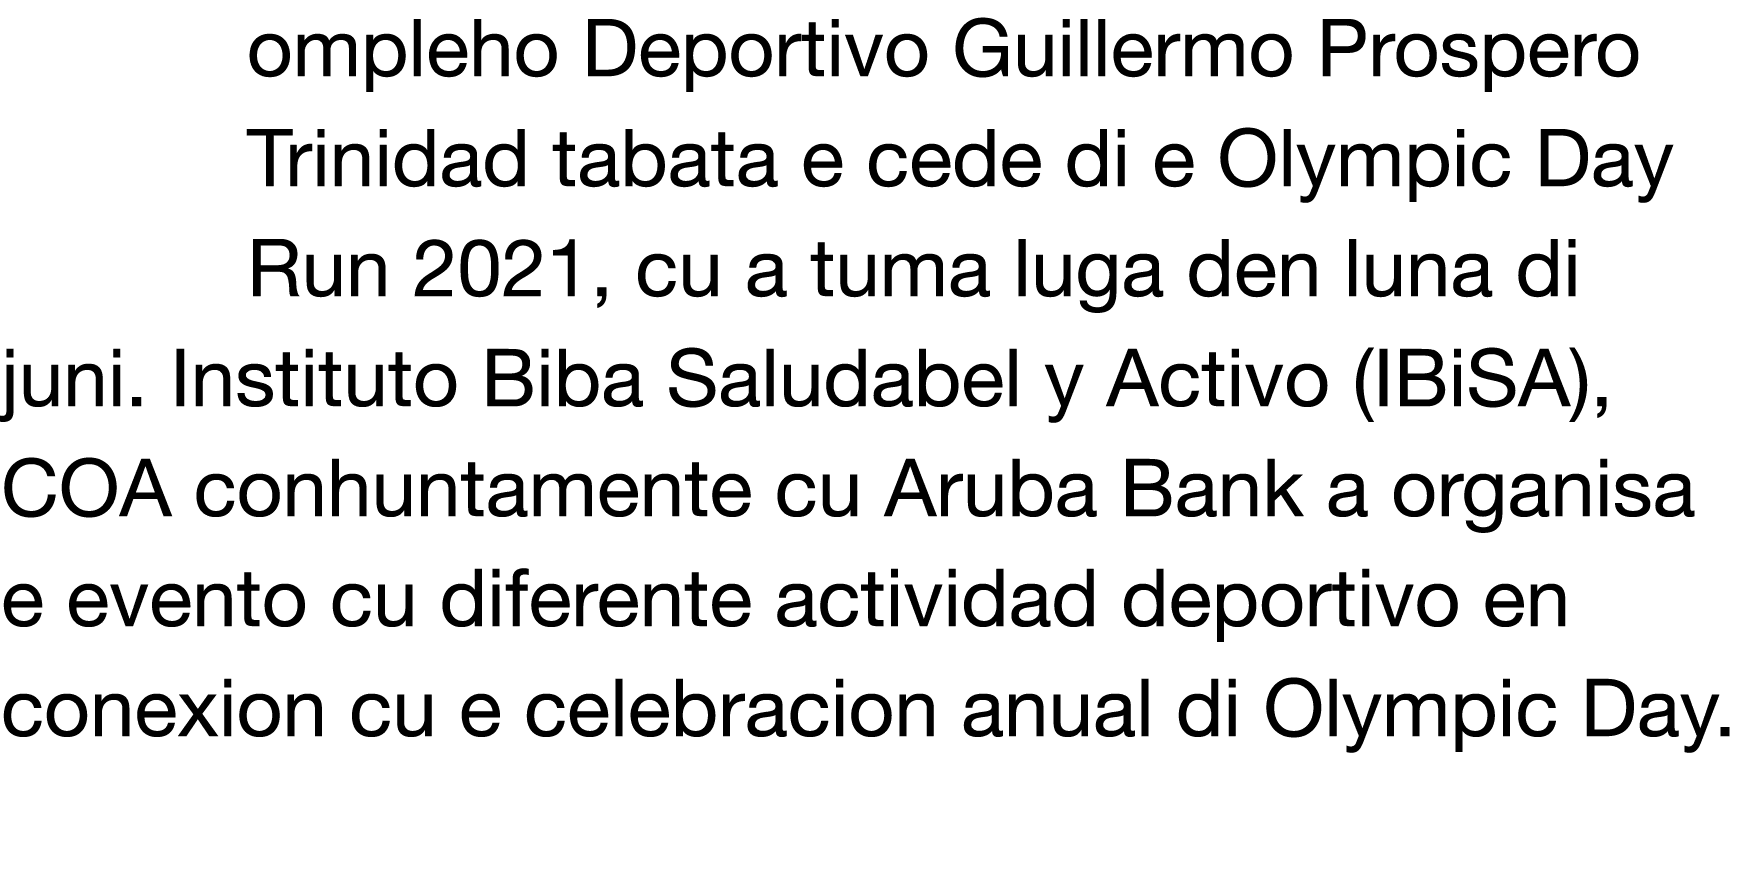 ompleho Deportivo Guillermo Prospero Trinidad tabata e cede di e Olympic Day Run 2021, cu a tuma luga den luna di jun   